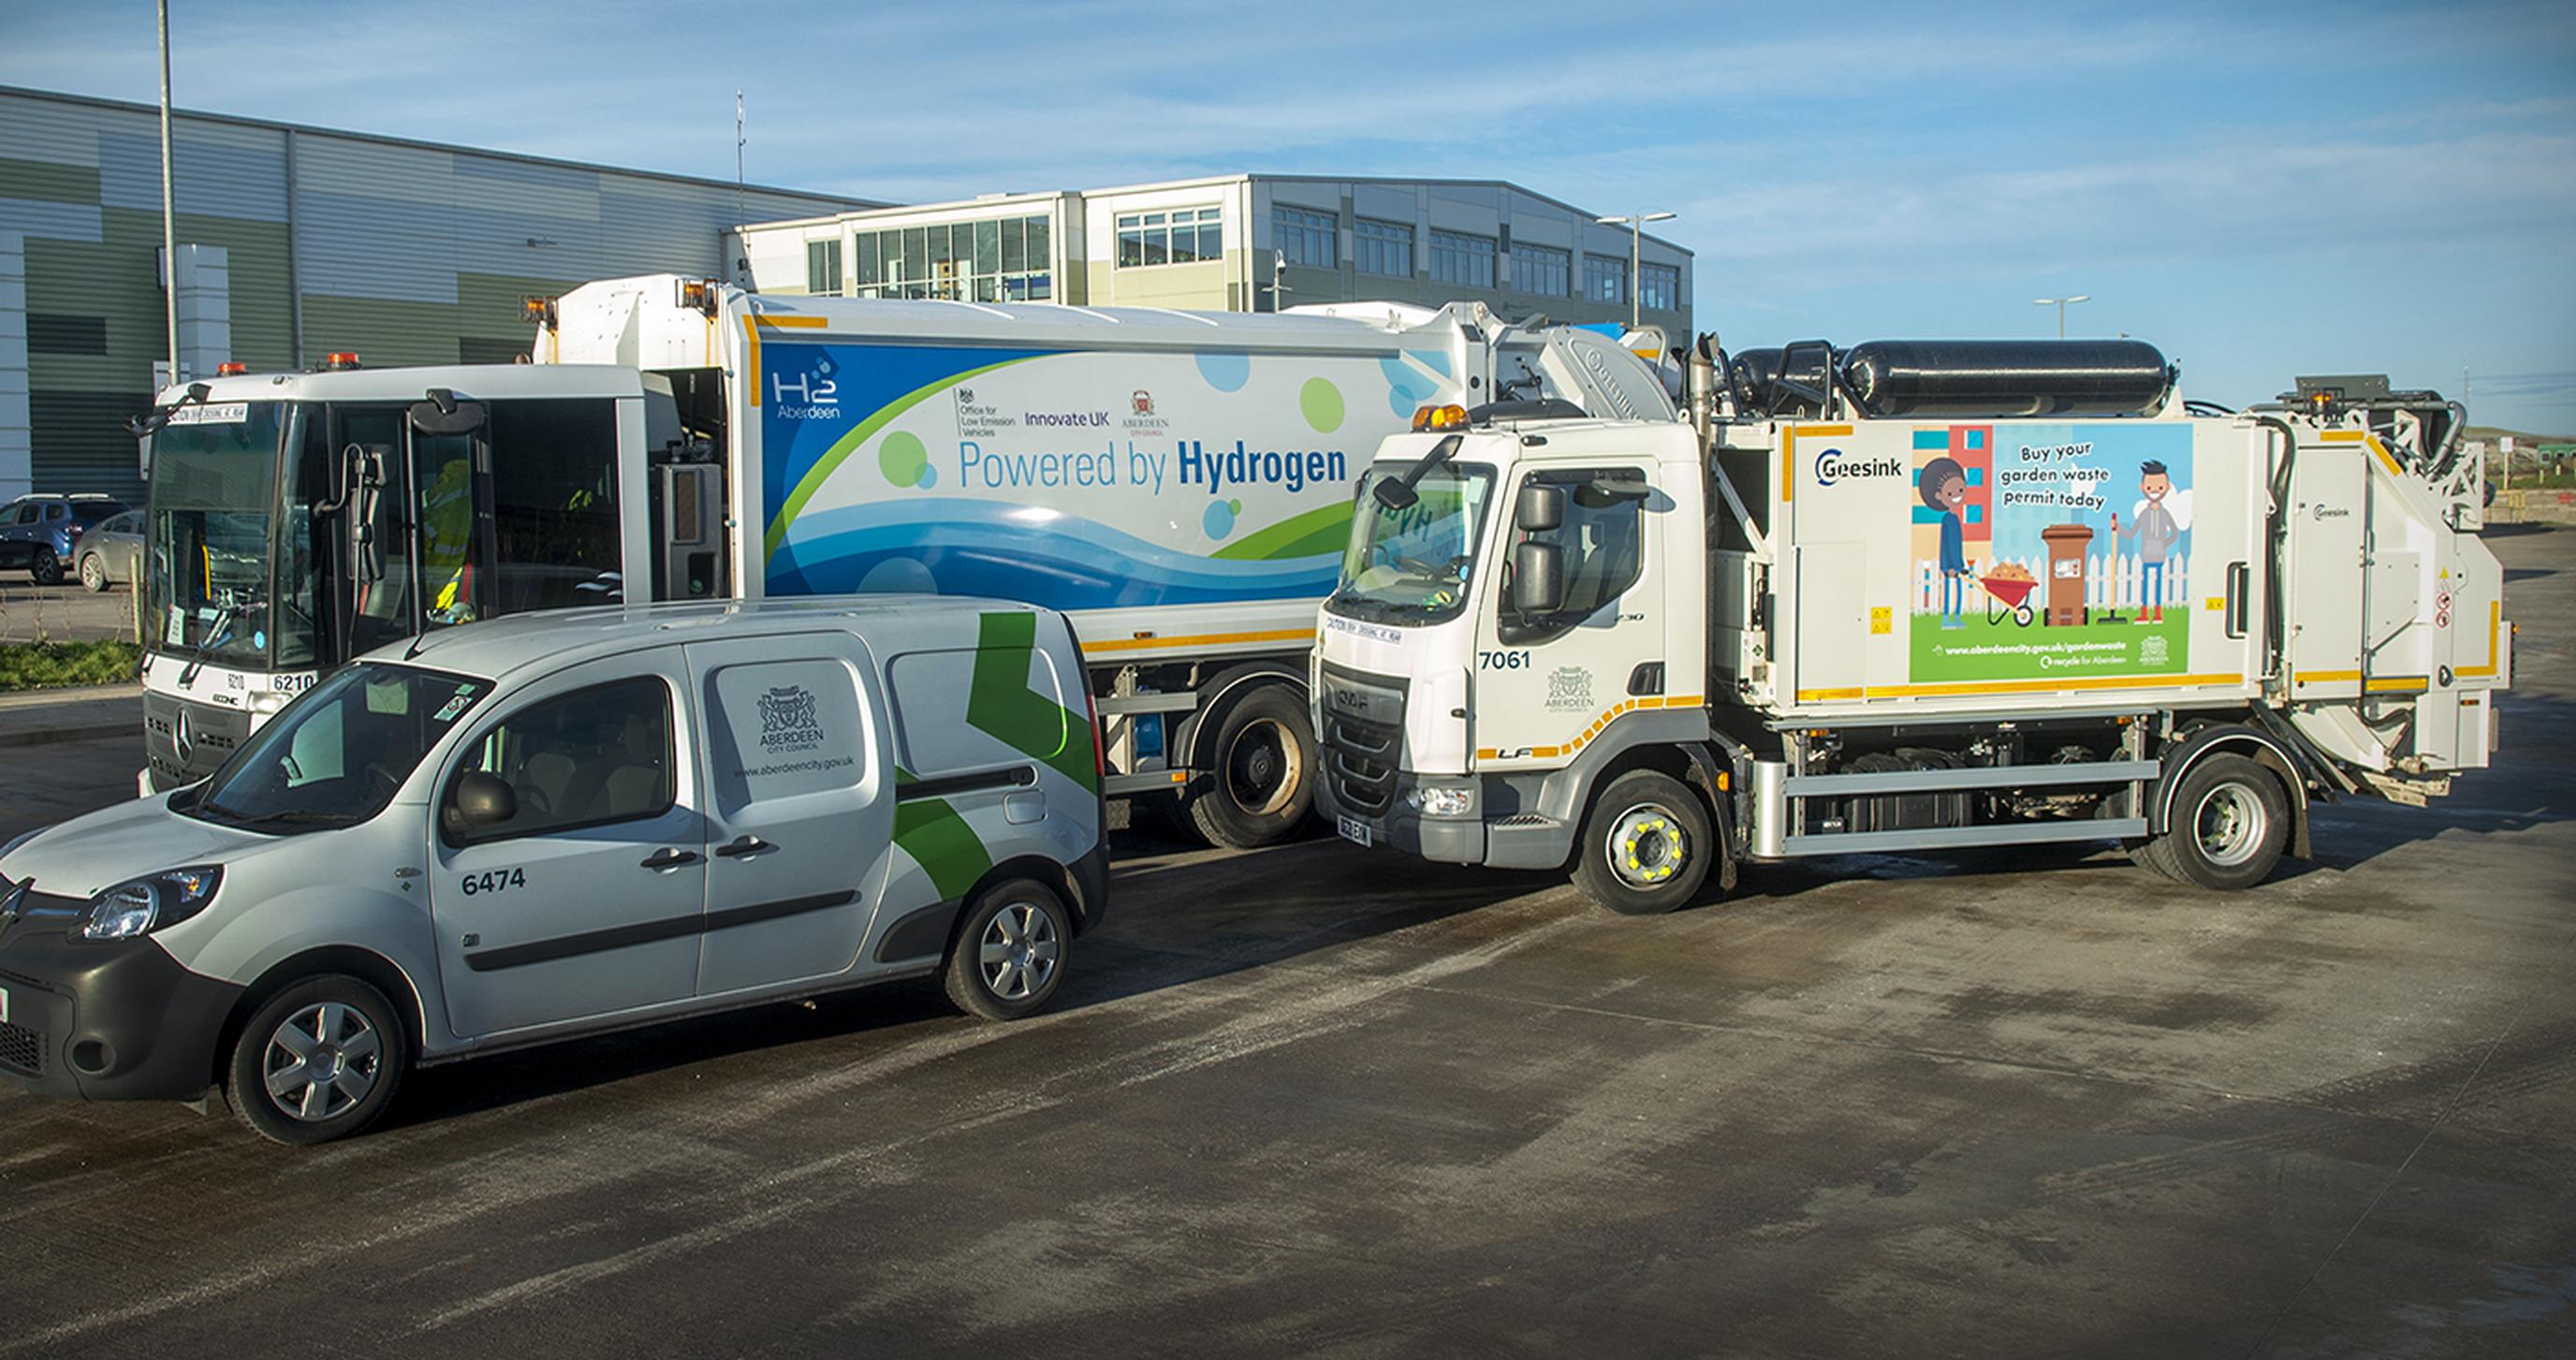 ULEMCo to undertake Aberdeen’s fleet-wide hydrogen conversion